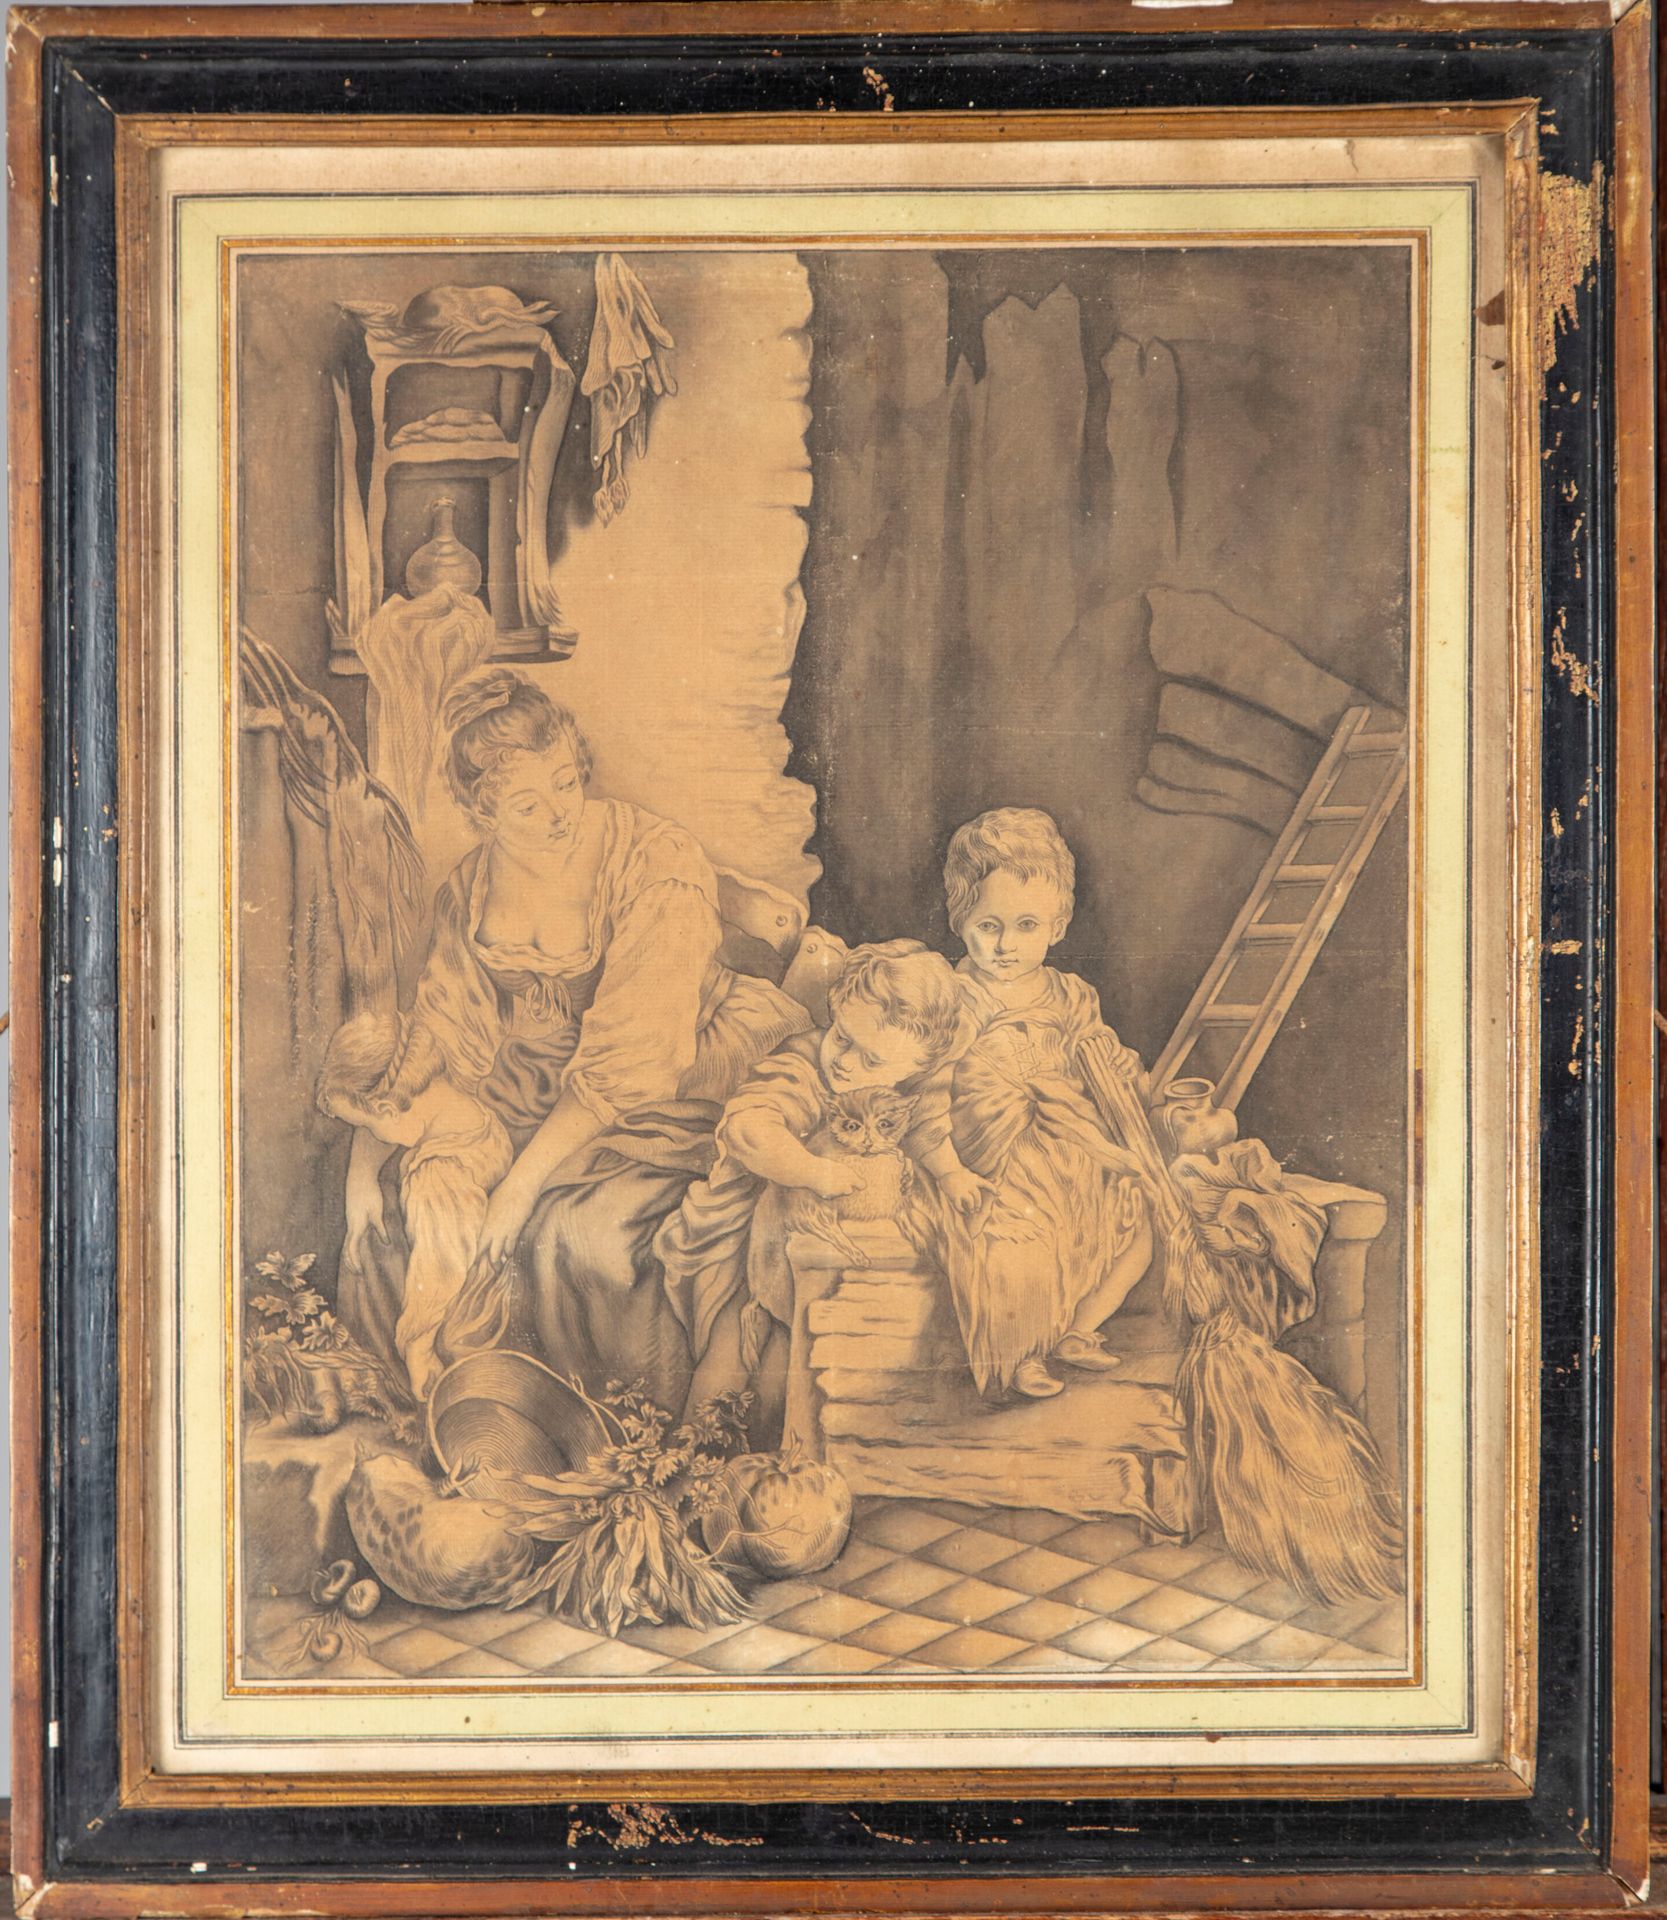 ECOLE FRANCAISE Siglo XVIII ESCUELA FRANCESA 

Mujer y niño en un interior rústi&hellip;